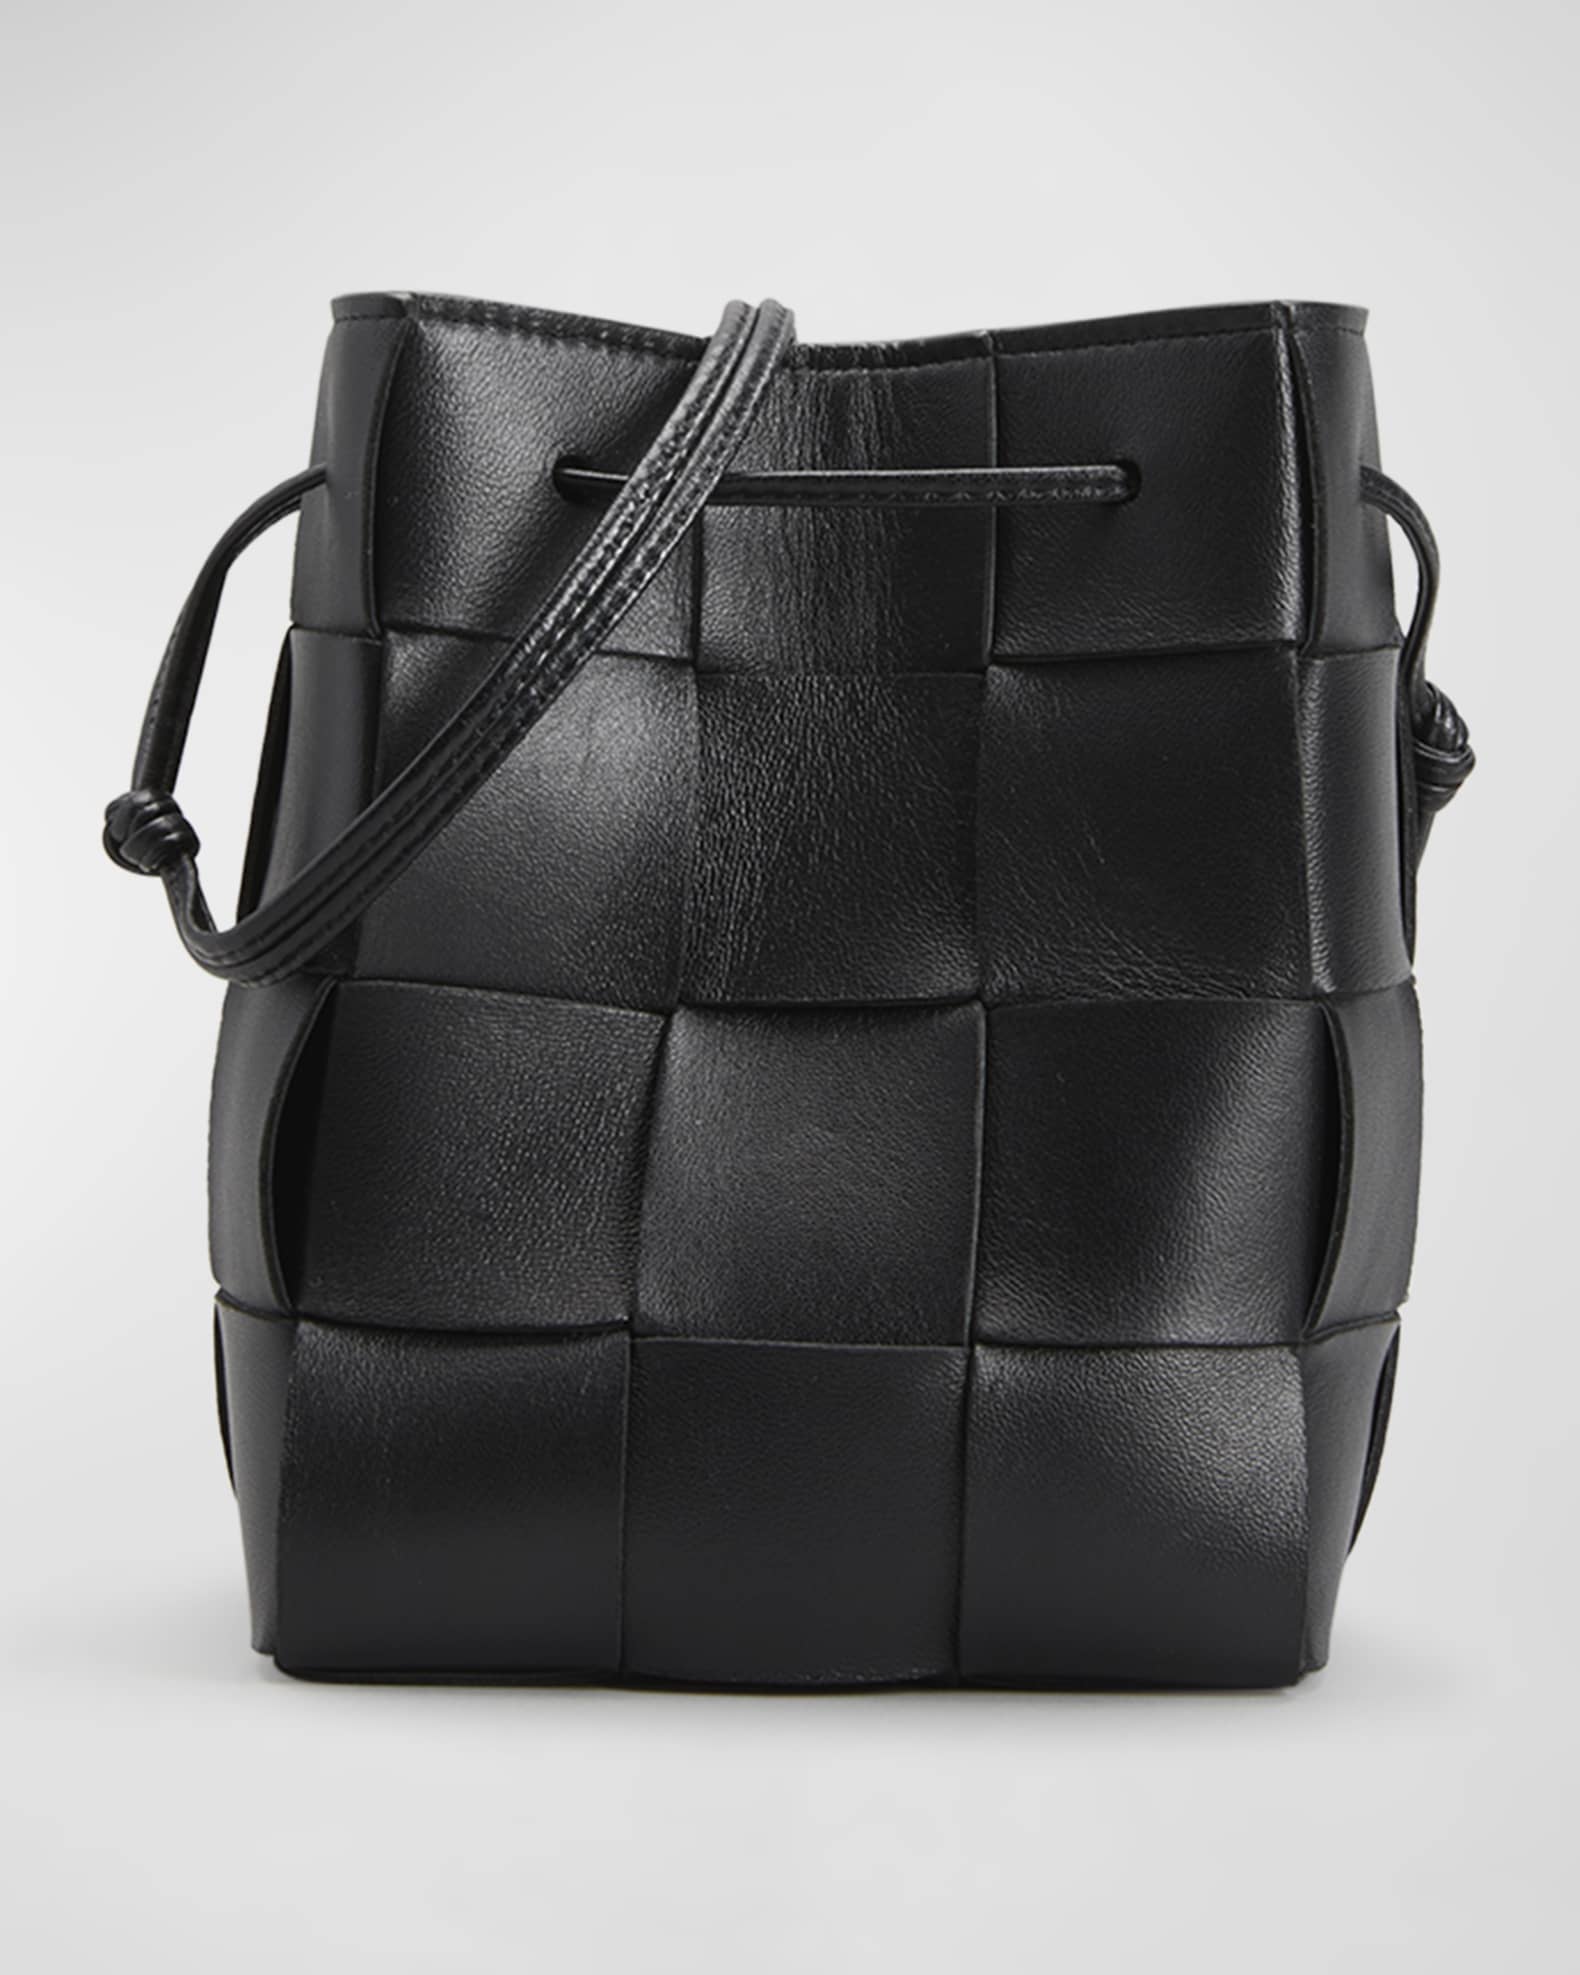 Bottega Veneta 'Cassette Small' bucket bag, Women's Bags